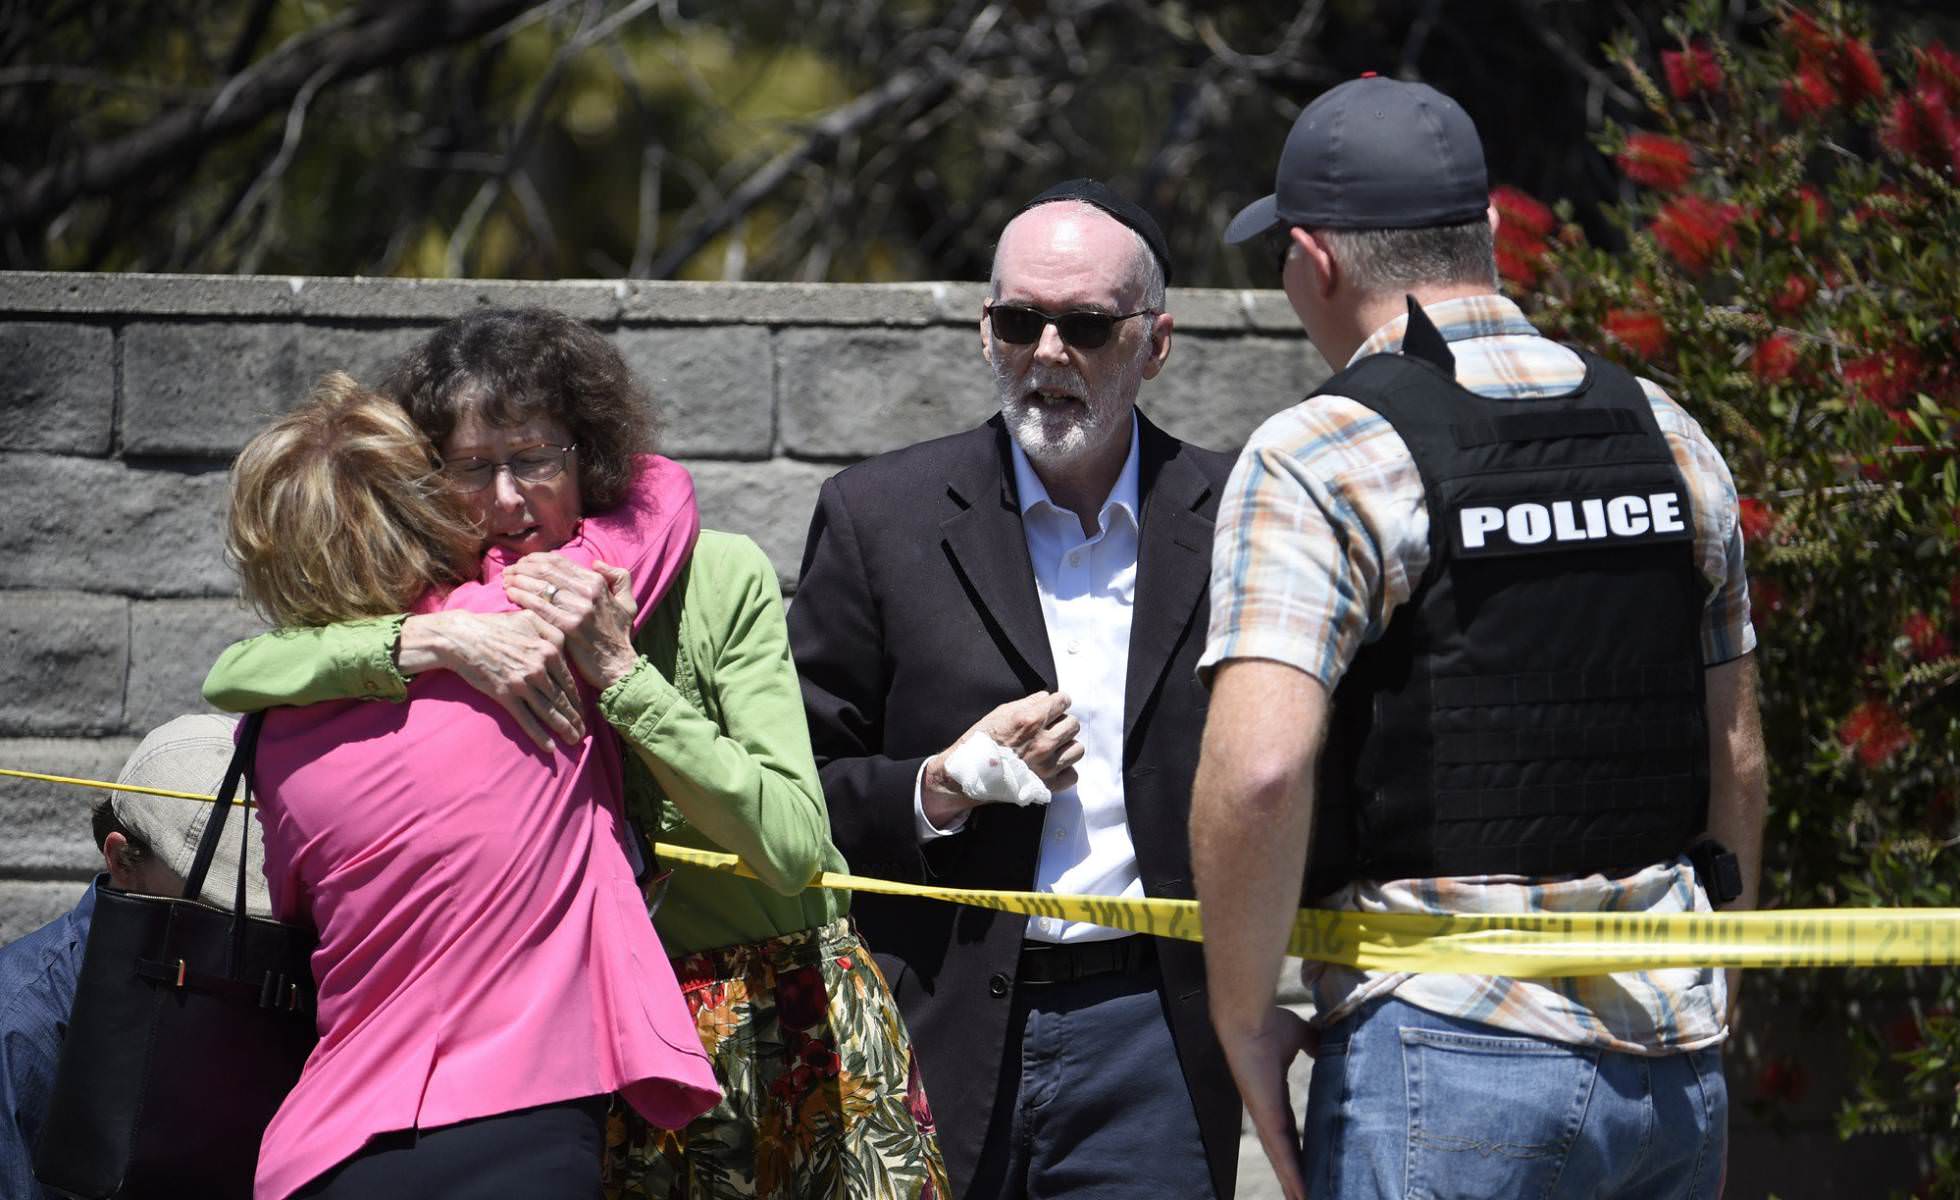 Suspeito de tiroteio em sinagoga na Califórnia é preso